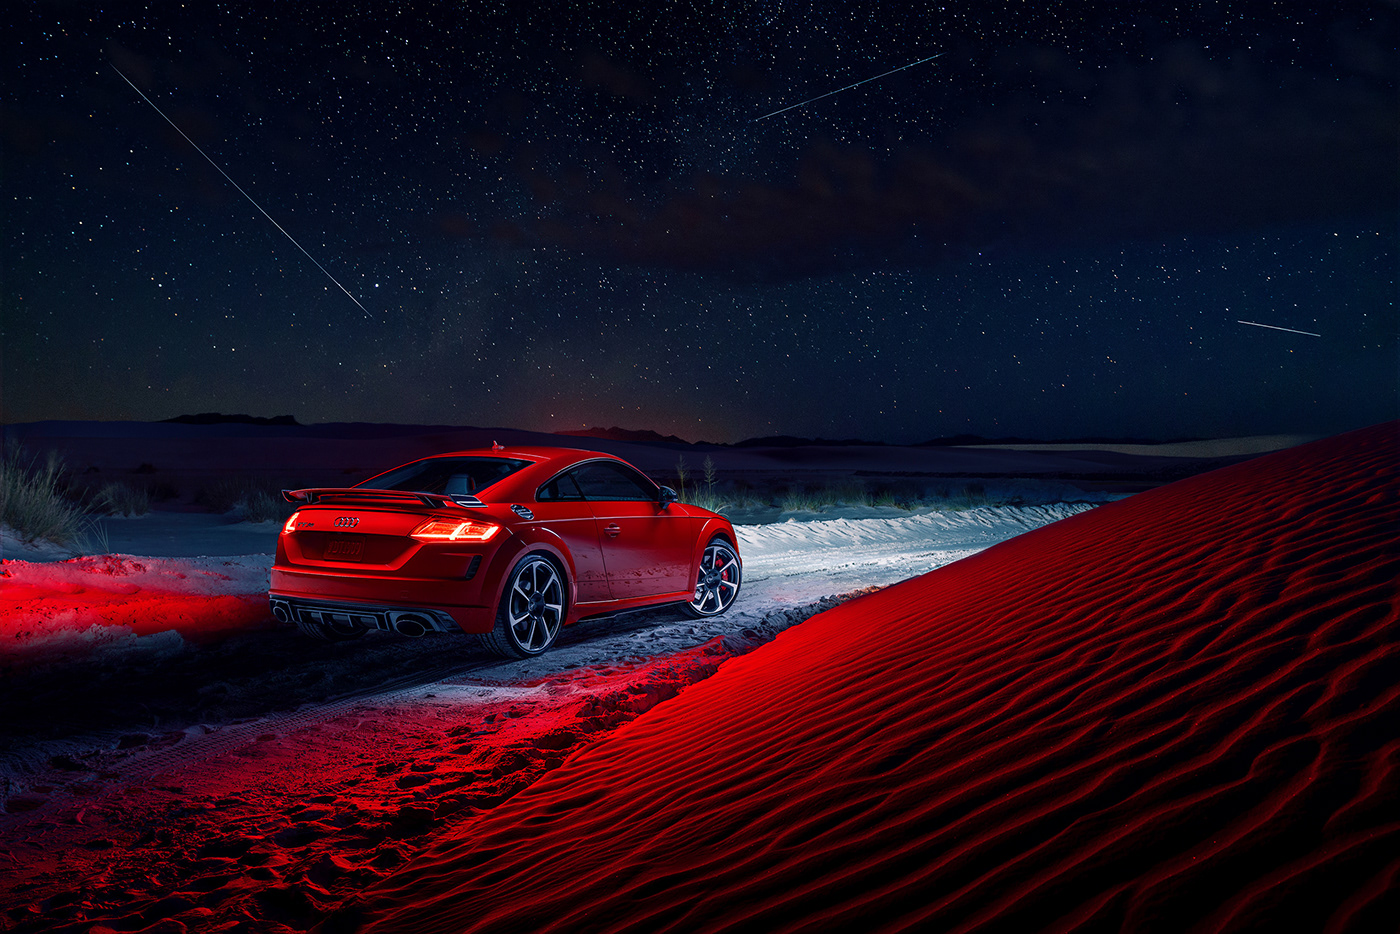 Audi meteor Meteor shower sand dunes TT RS White Sands